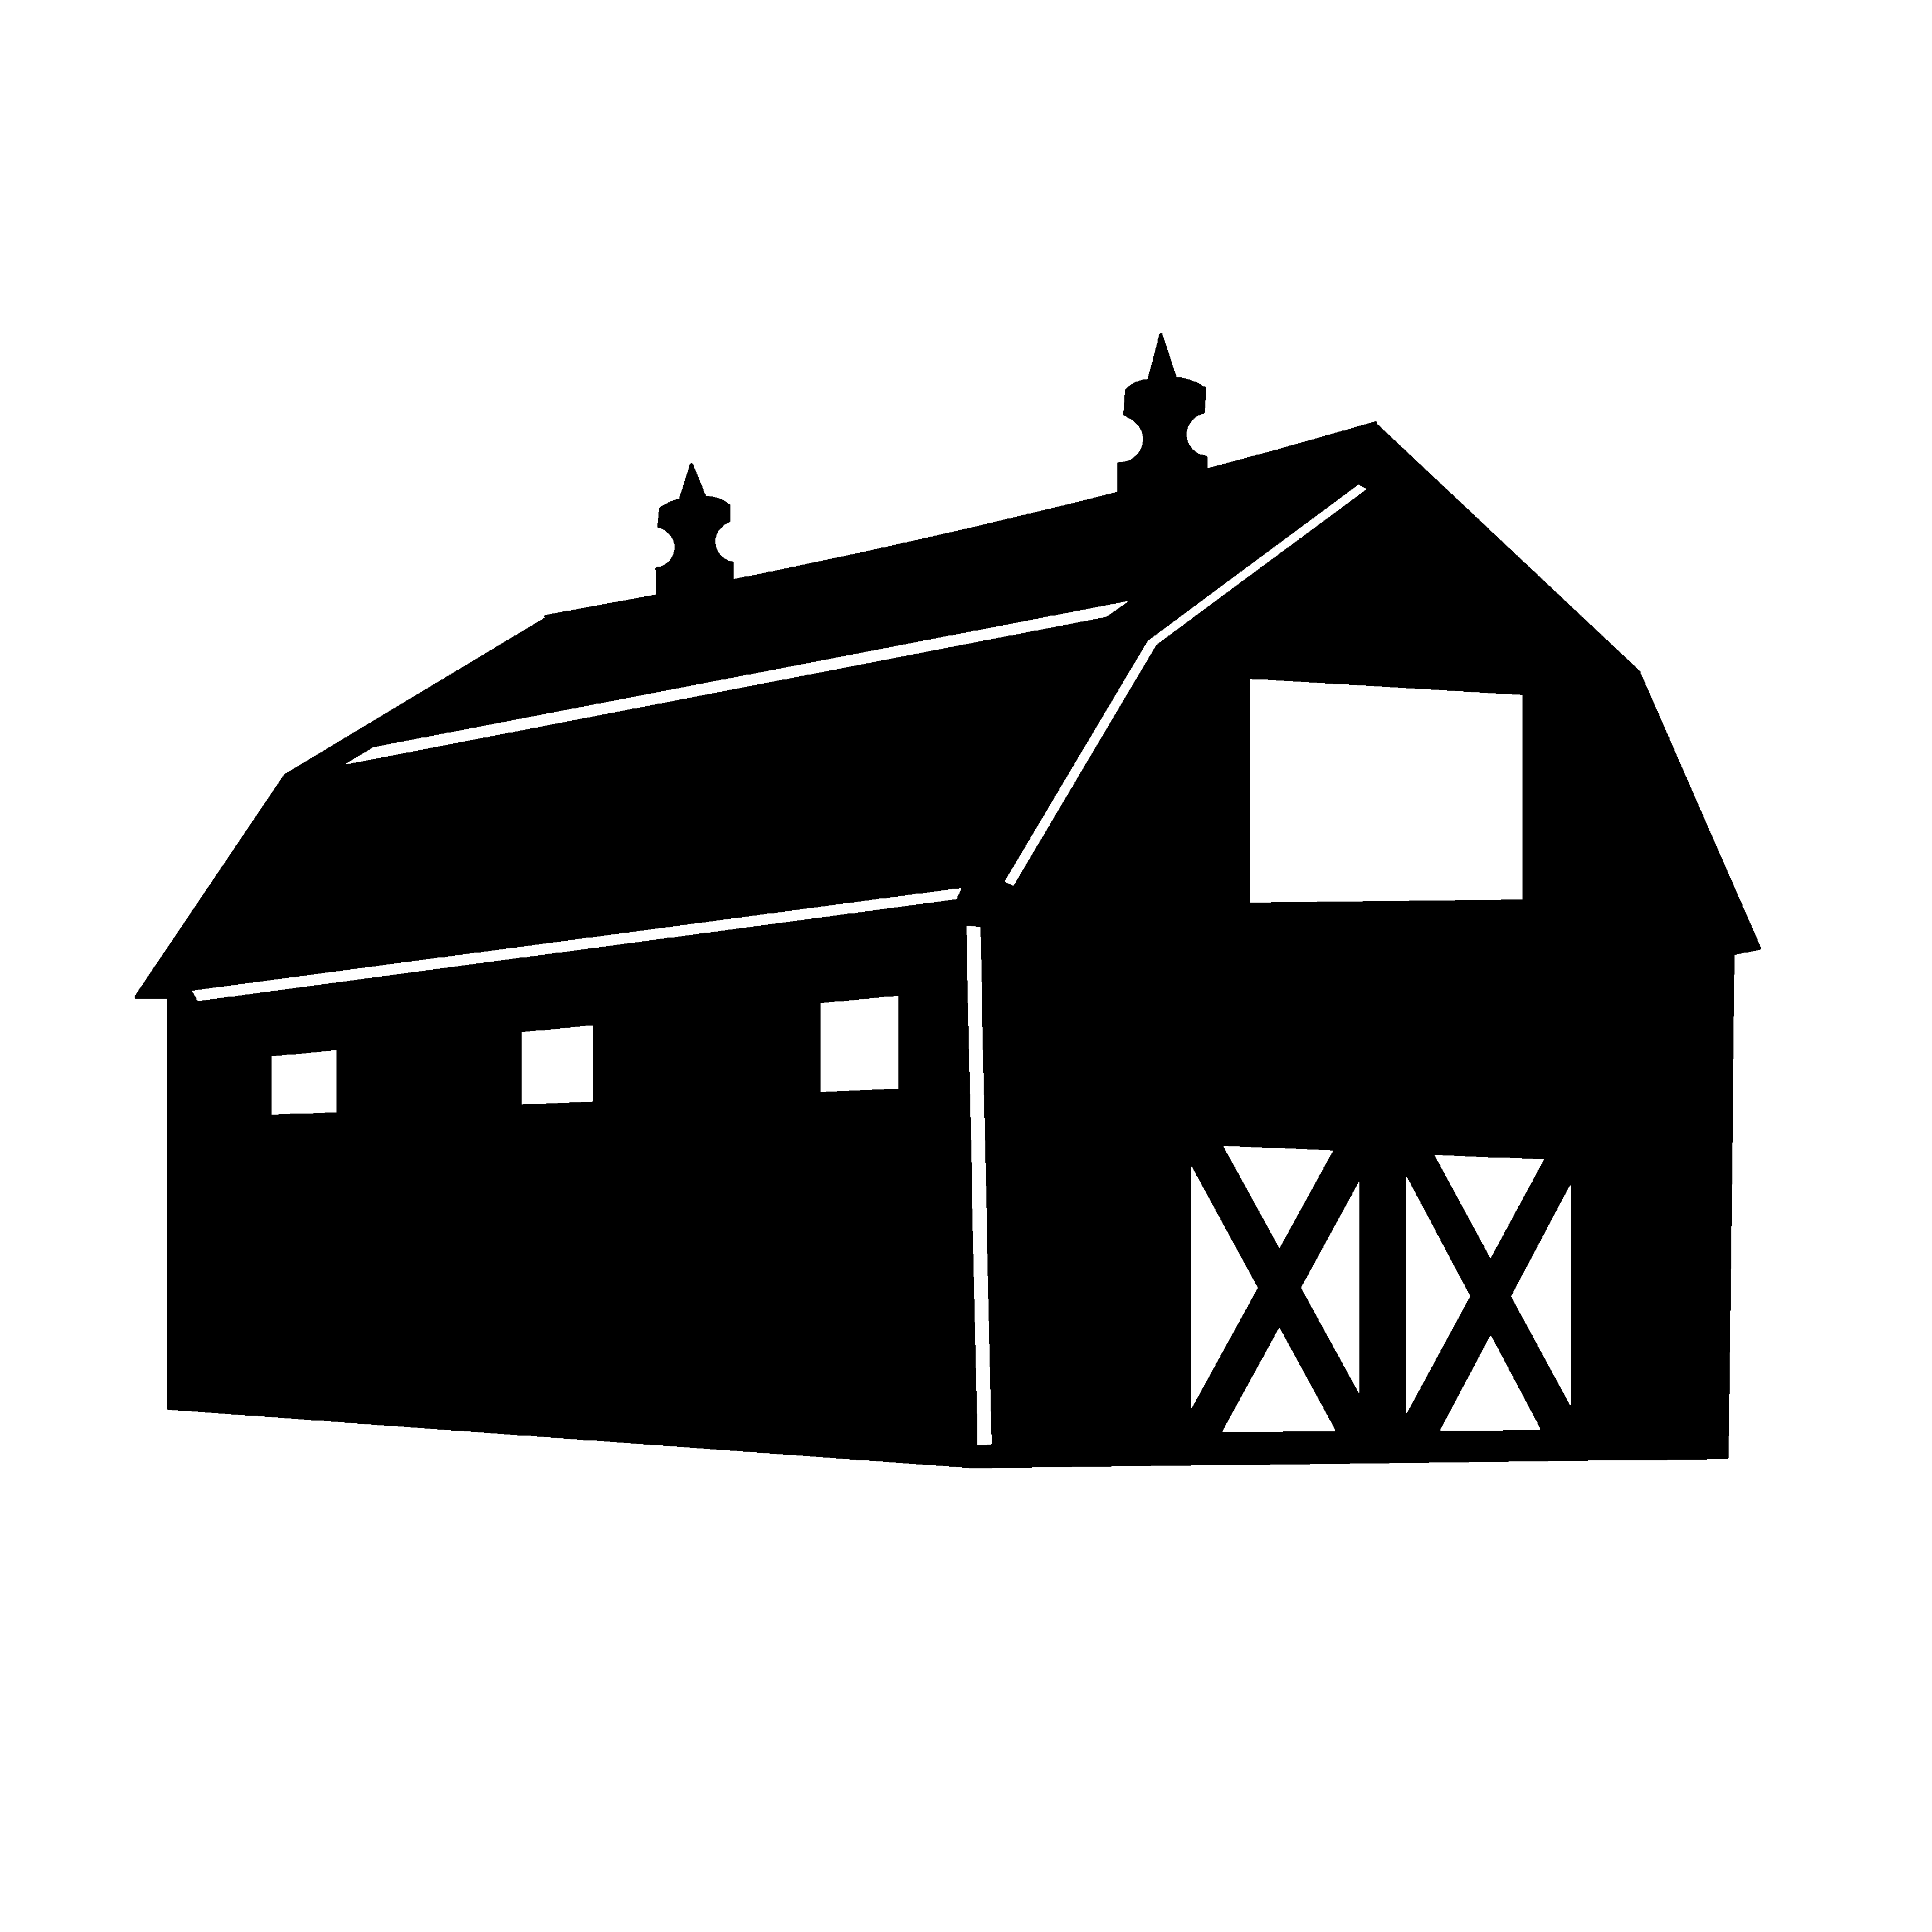 Farm silhouette clipart